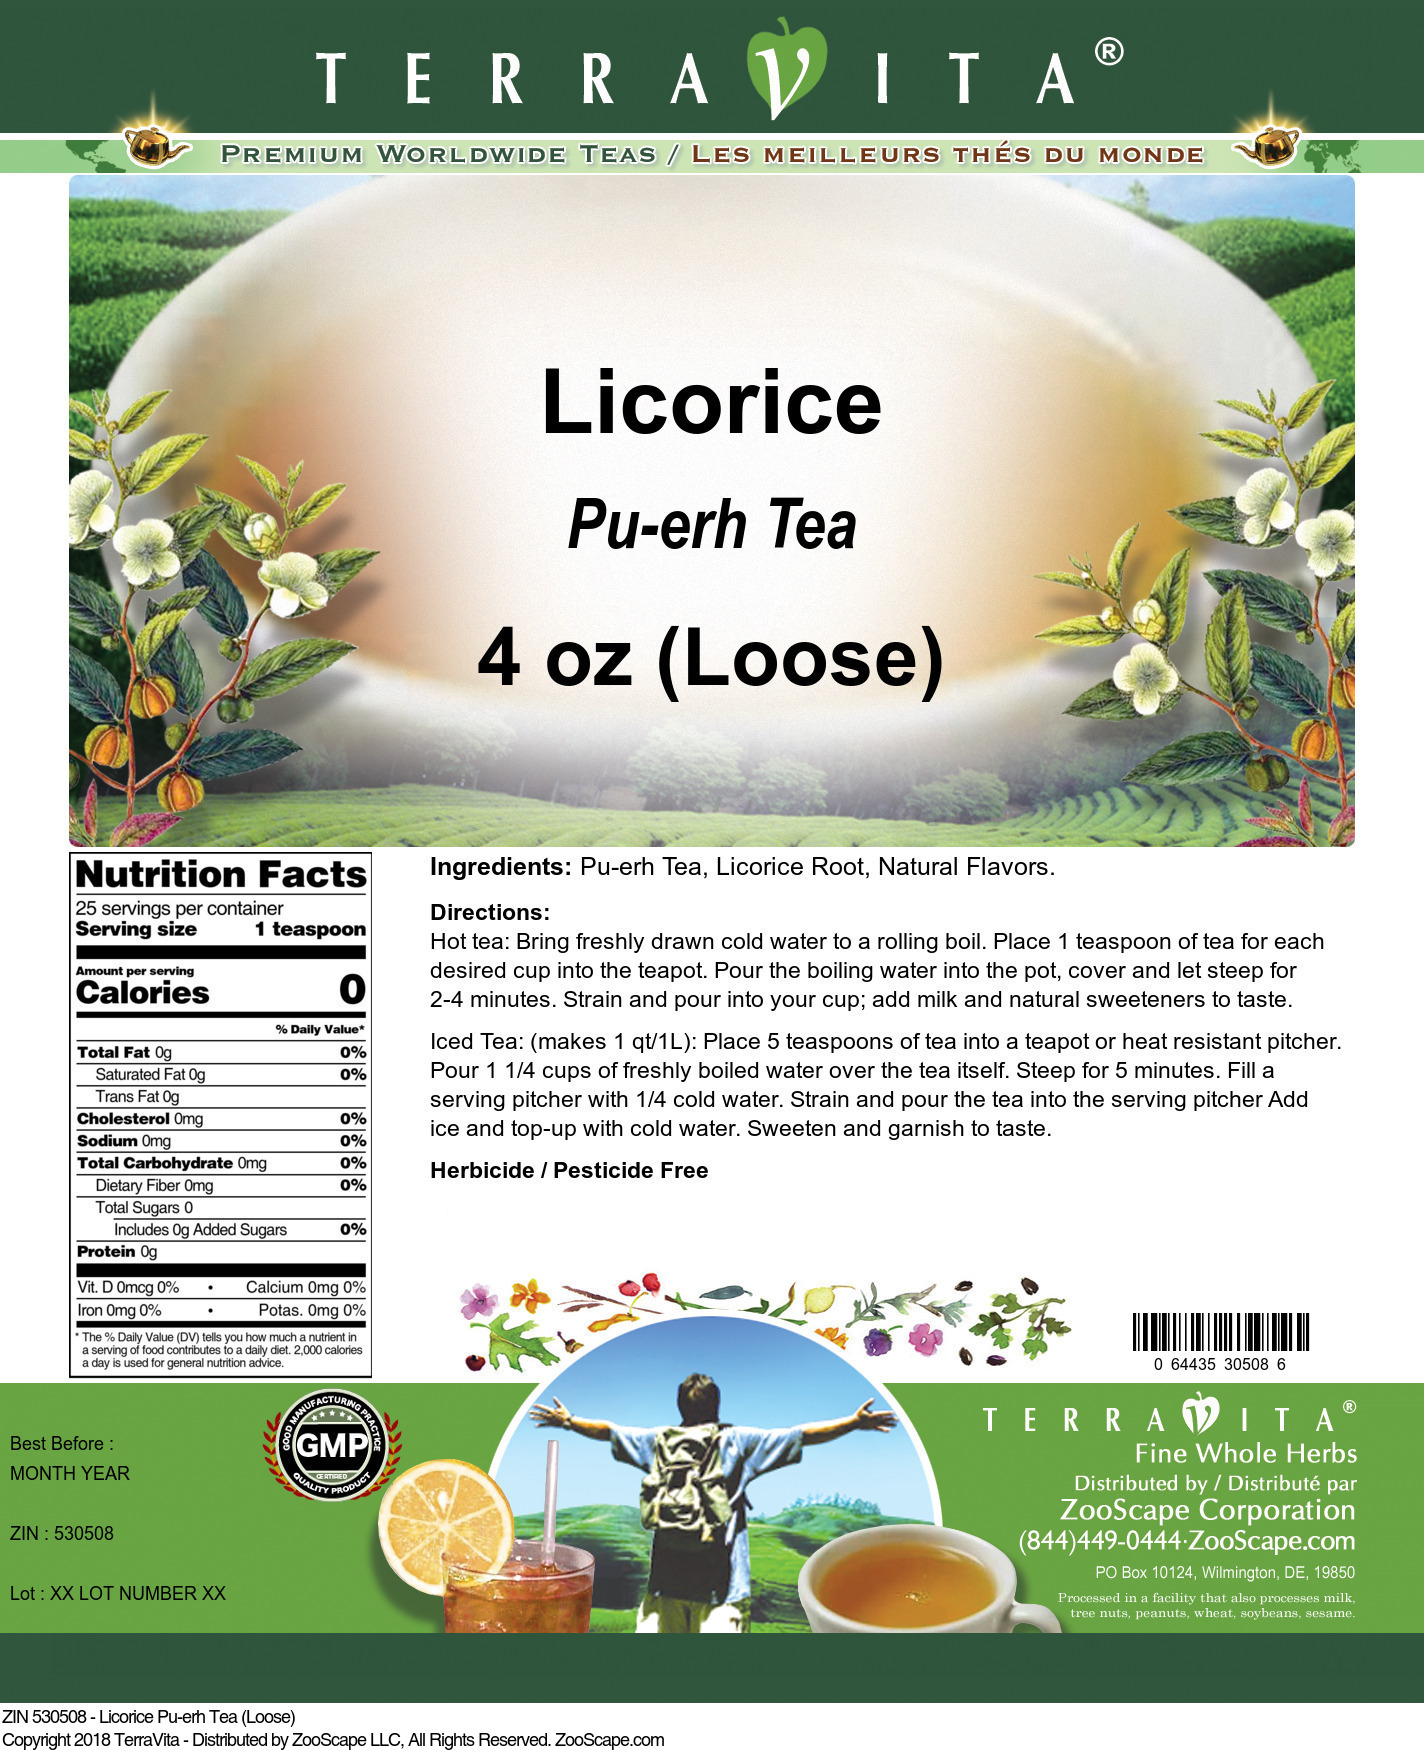 Licorice Pu-erh Tea (Loose) - Label